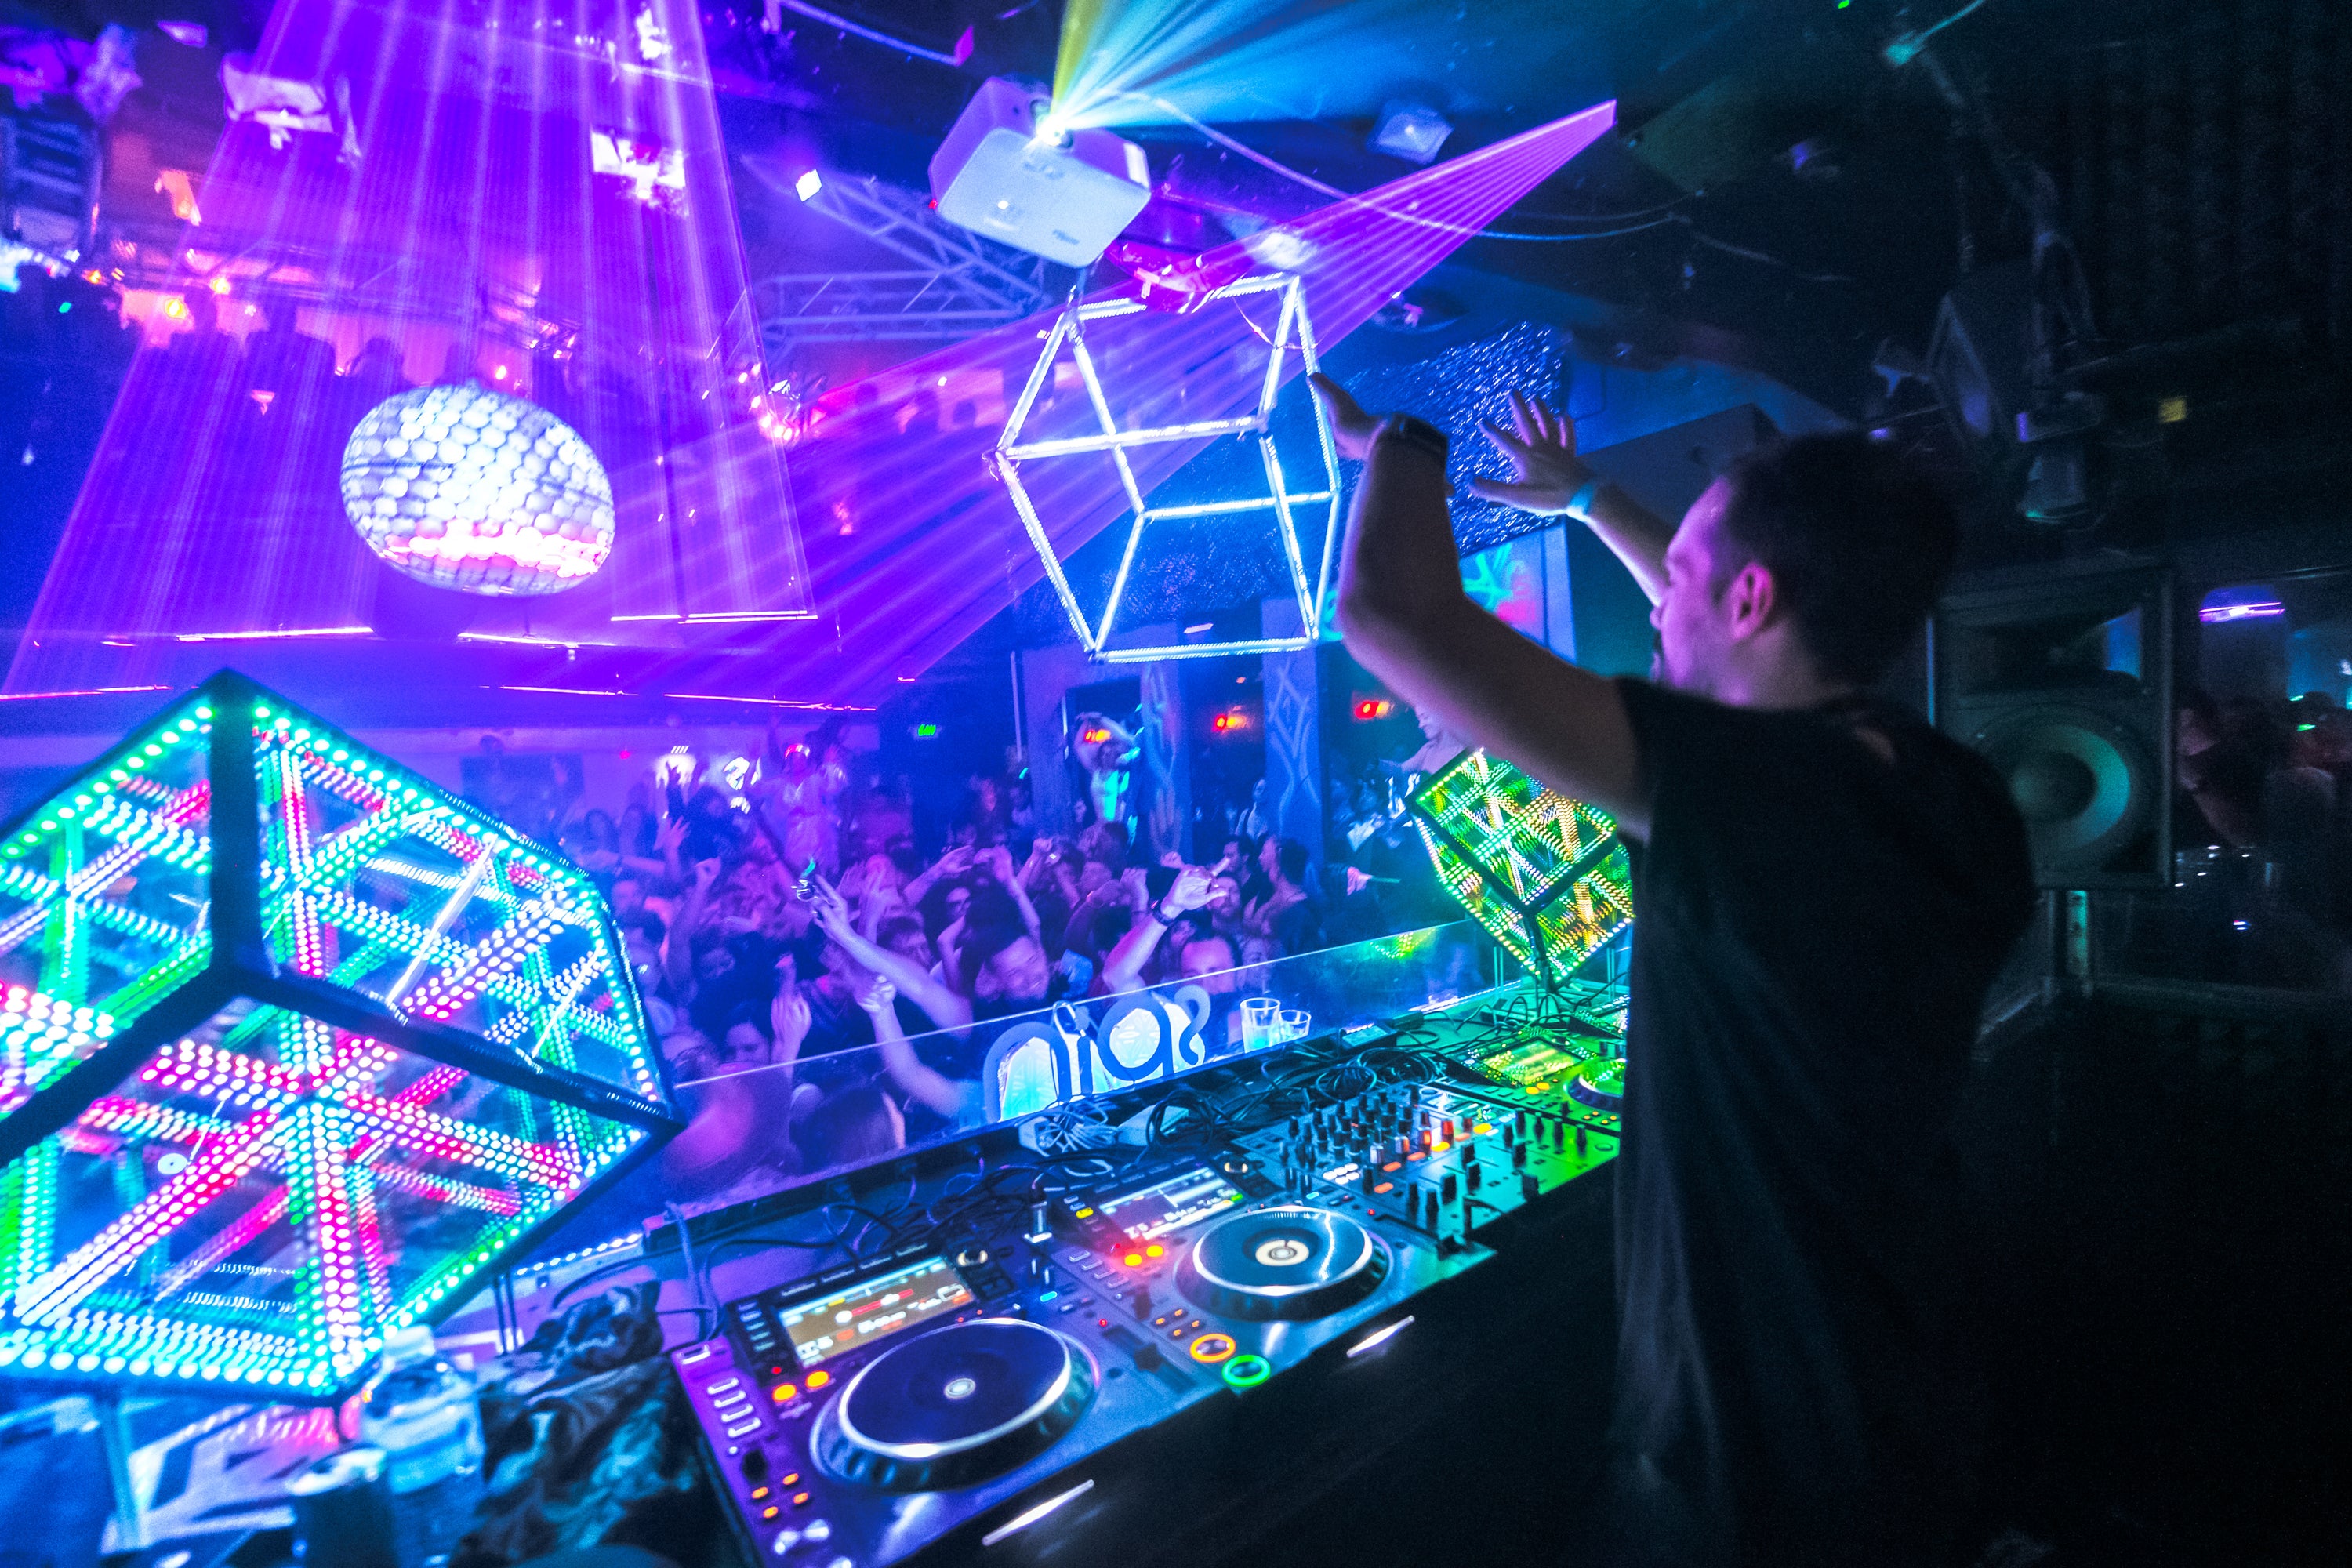 sound reactive lights in nightclub